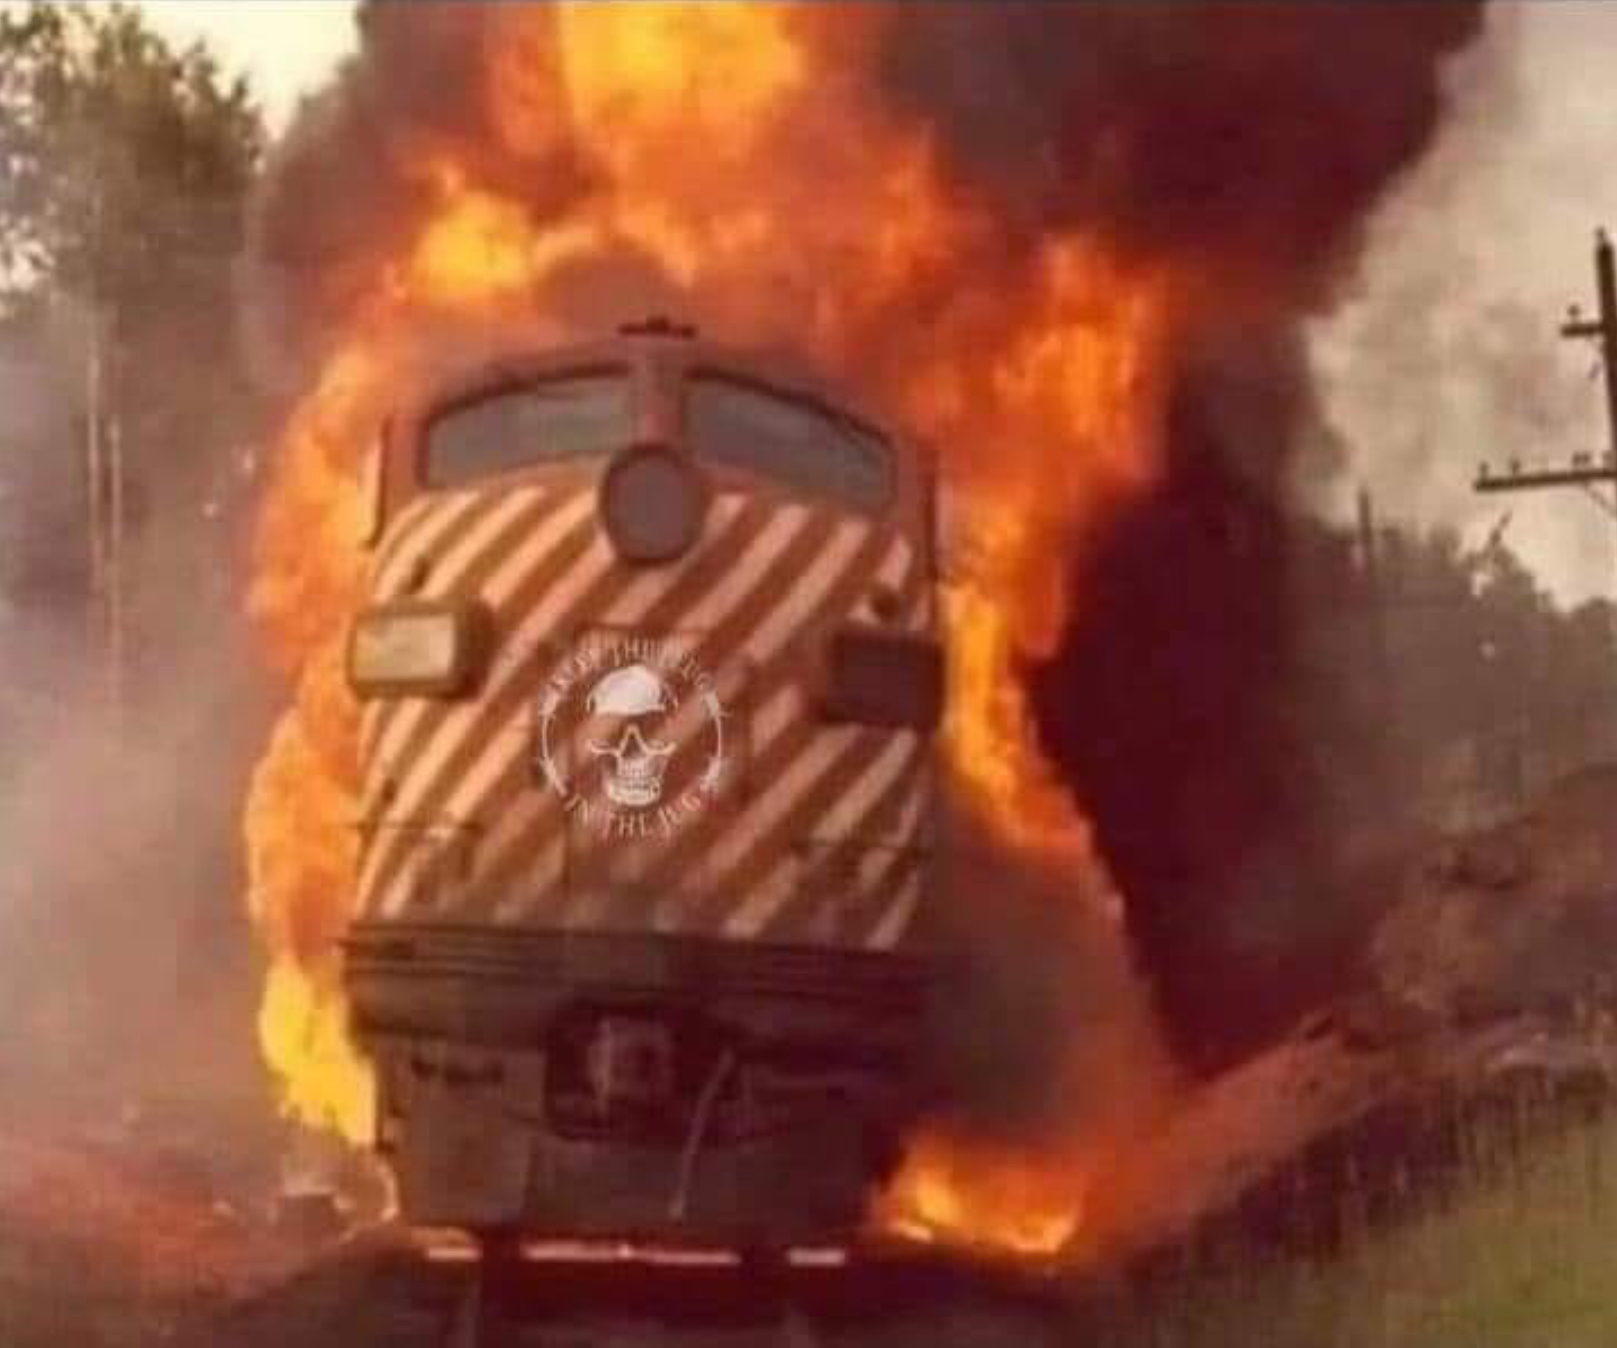 Train on fire Blank Meme Template